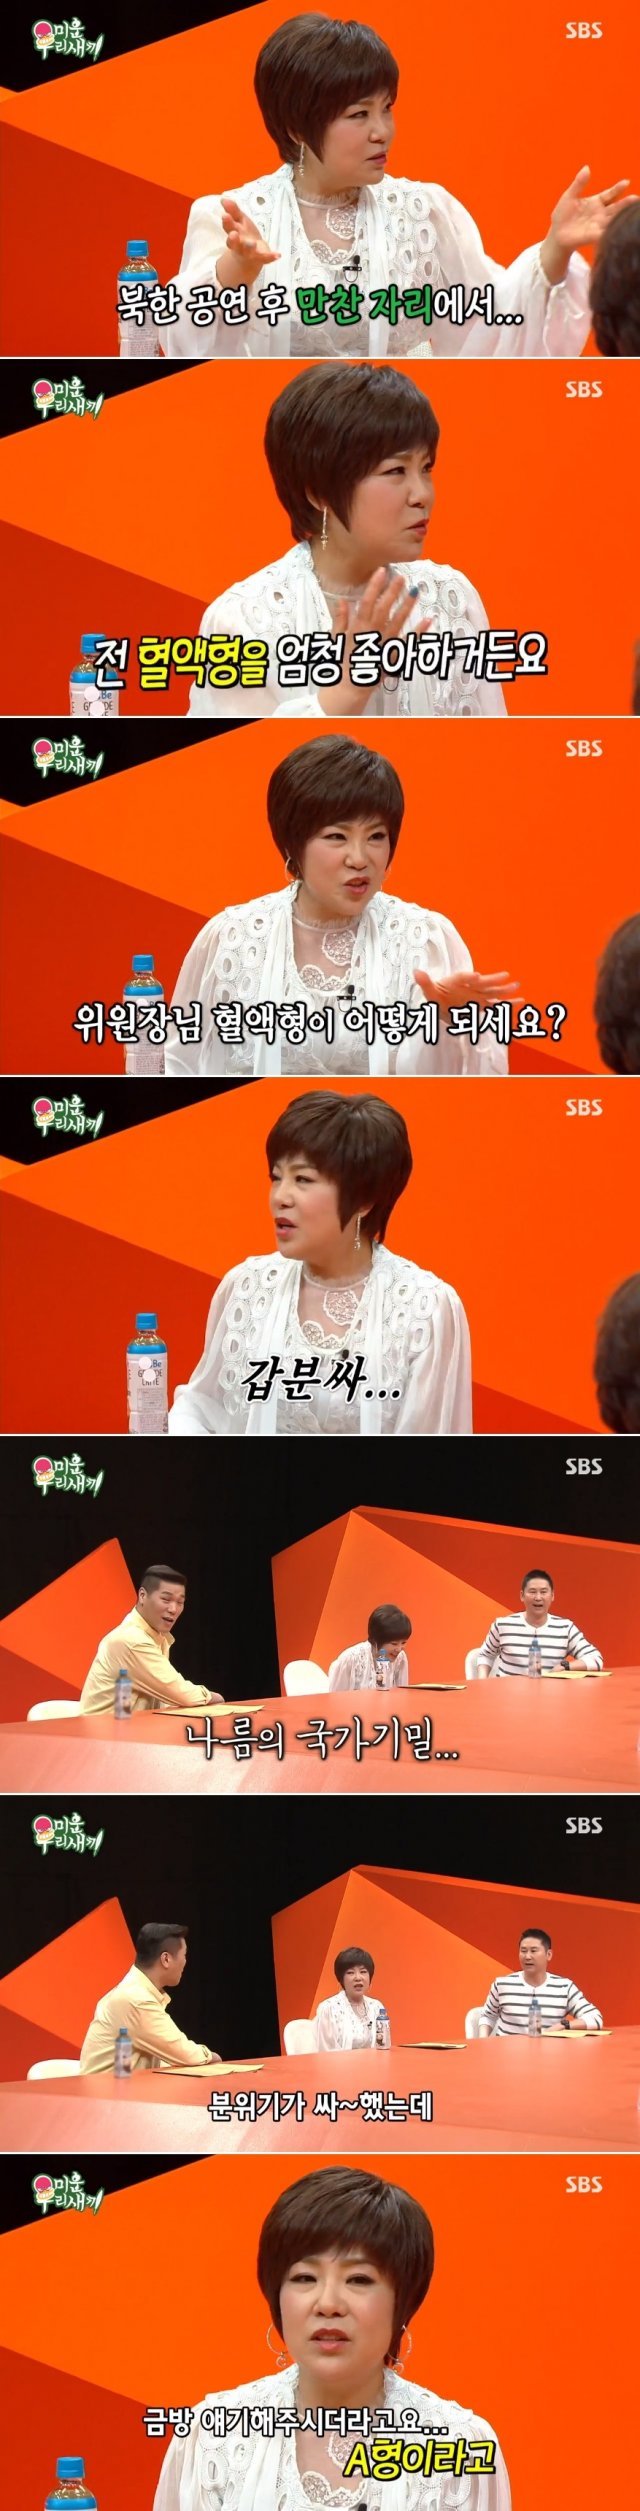 SBS ‘미우새’ 방송 화면 캡처